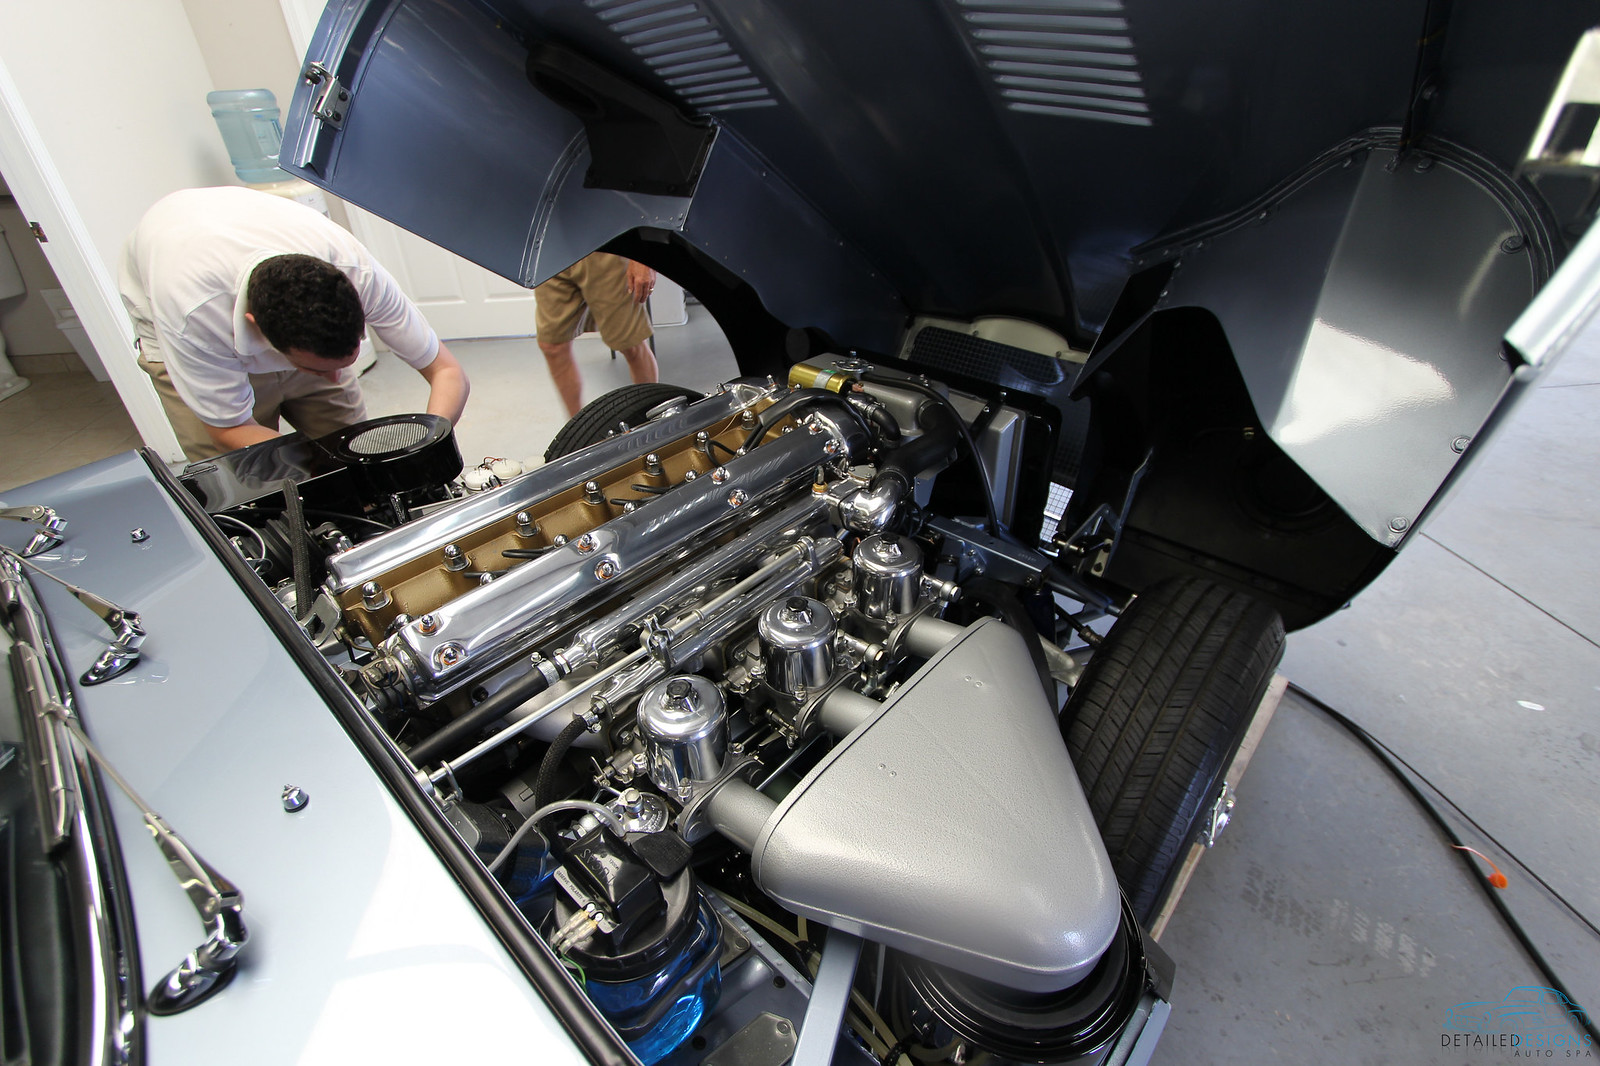 Jaguar E-type classic car engine bay detailing Atlanta Detailed Designs Auto Spa